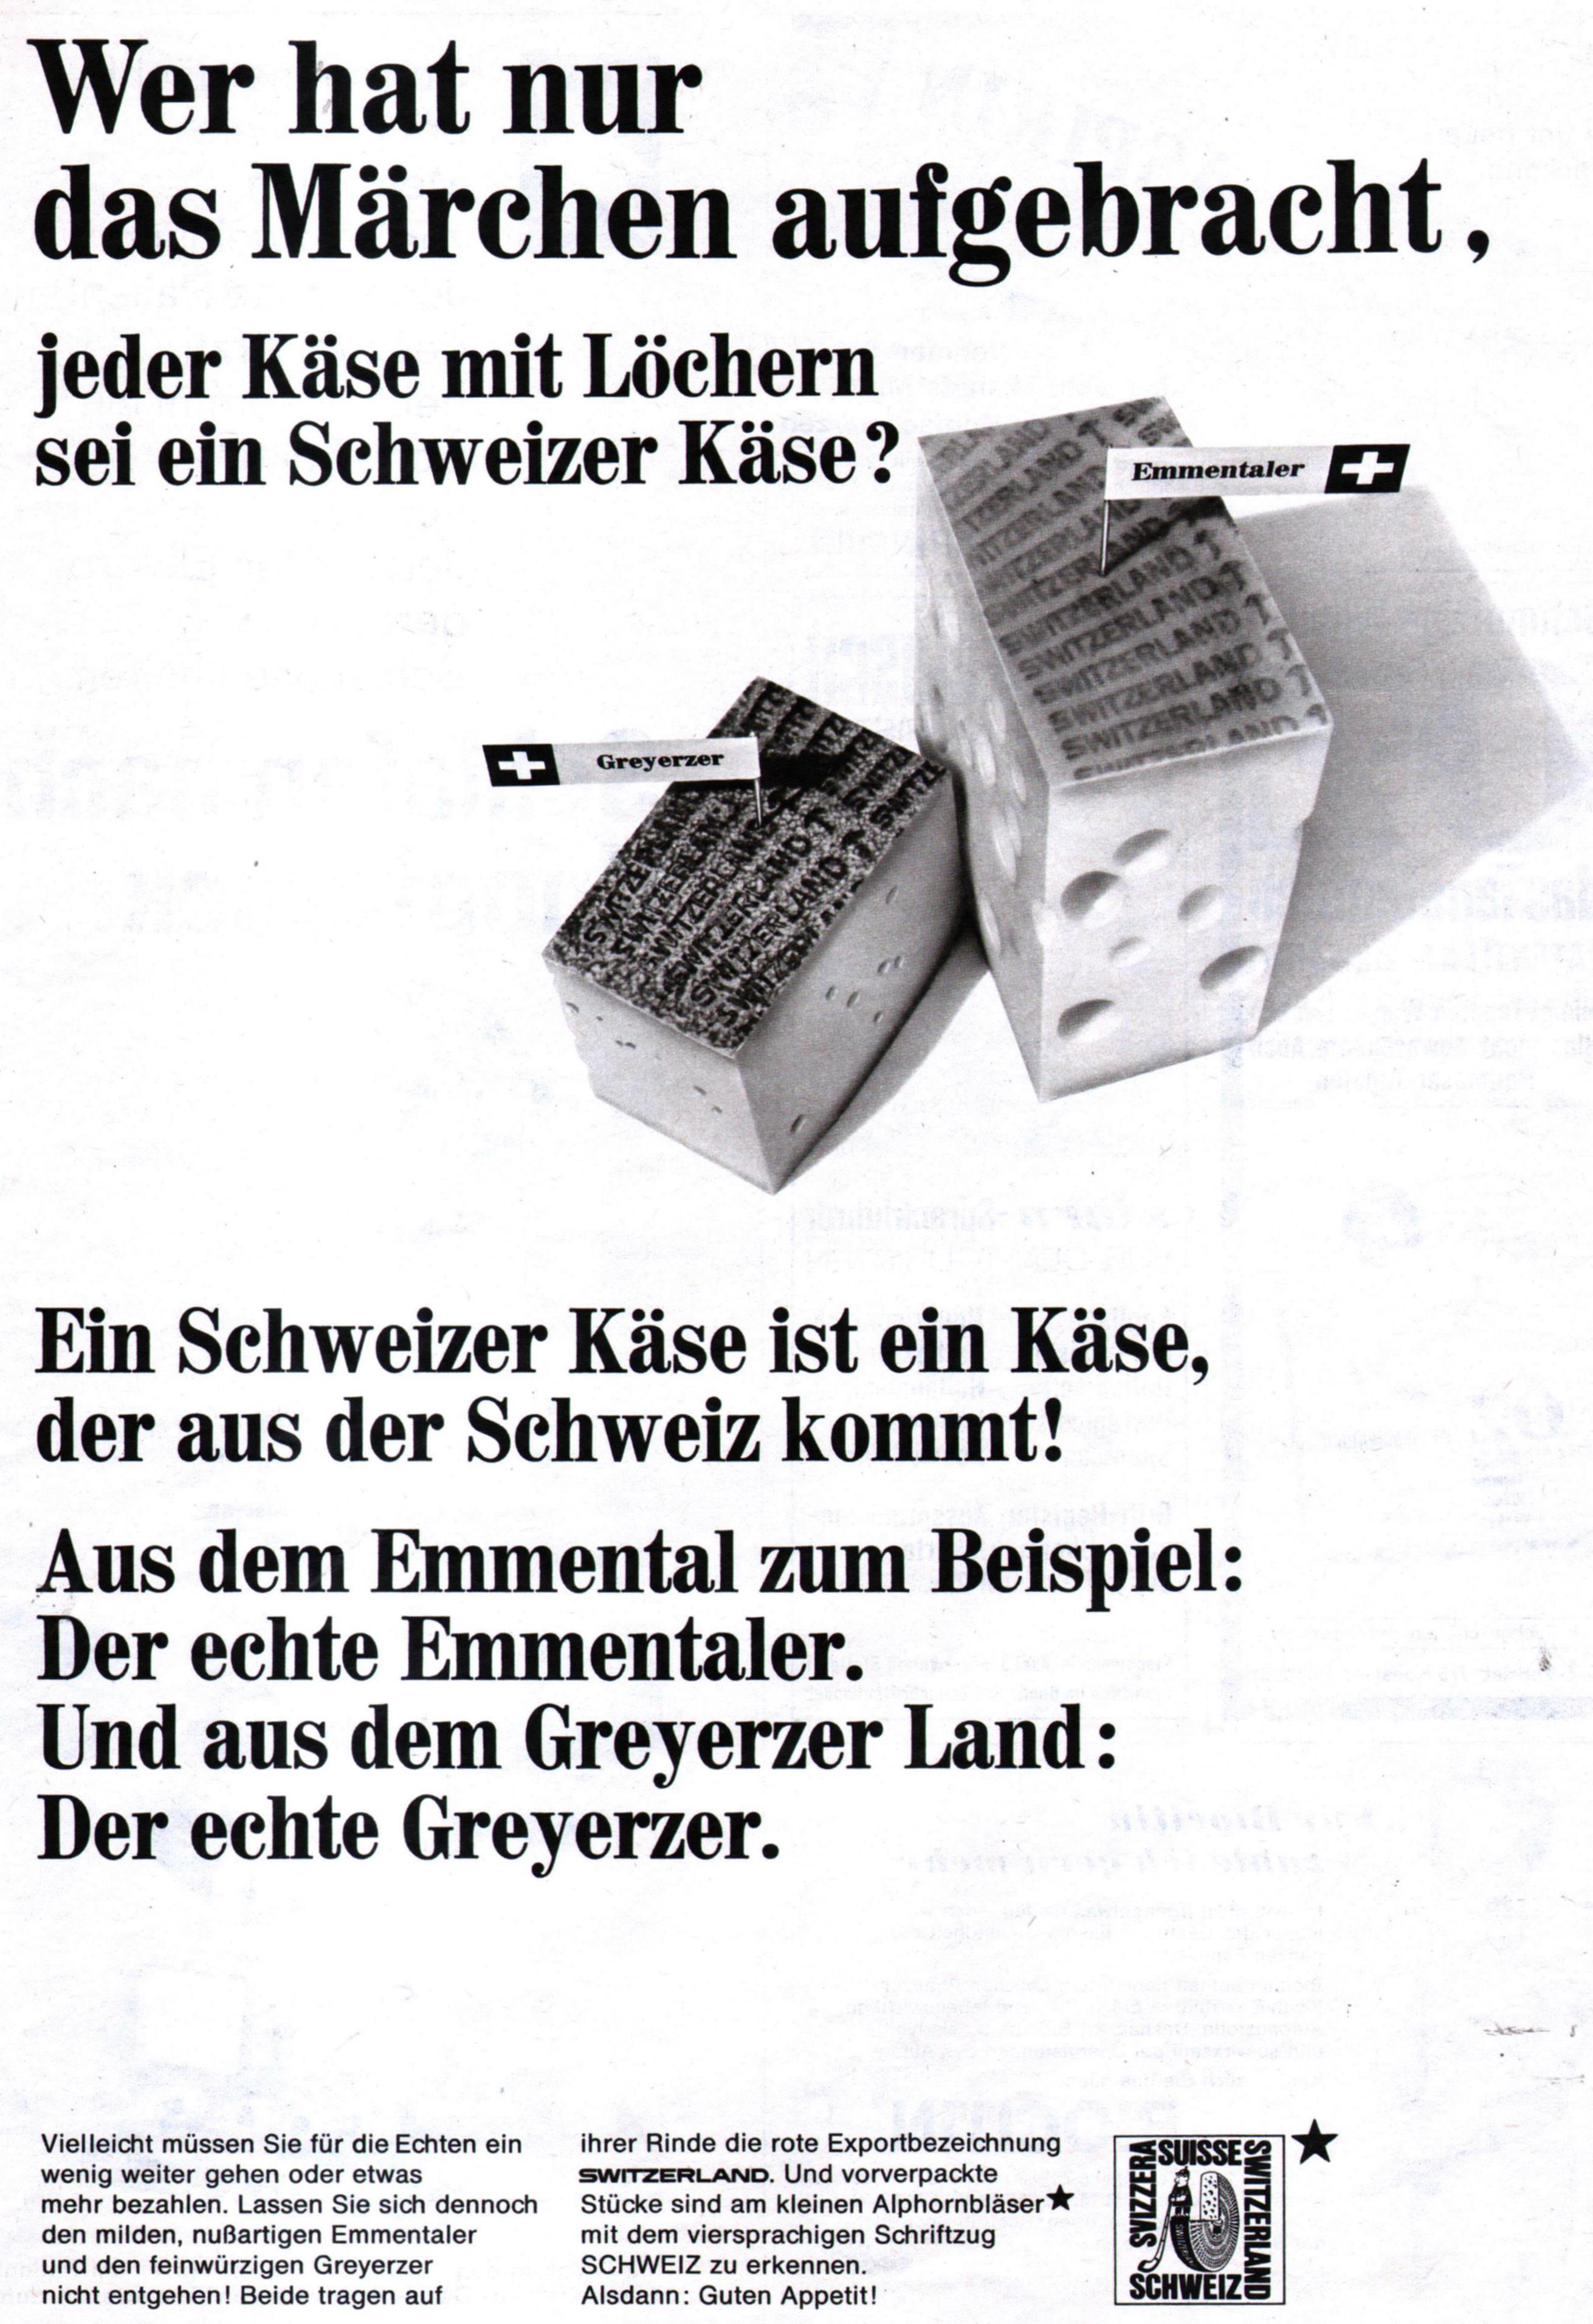 Schweizer Kaese 1967 326.jpg